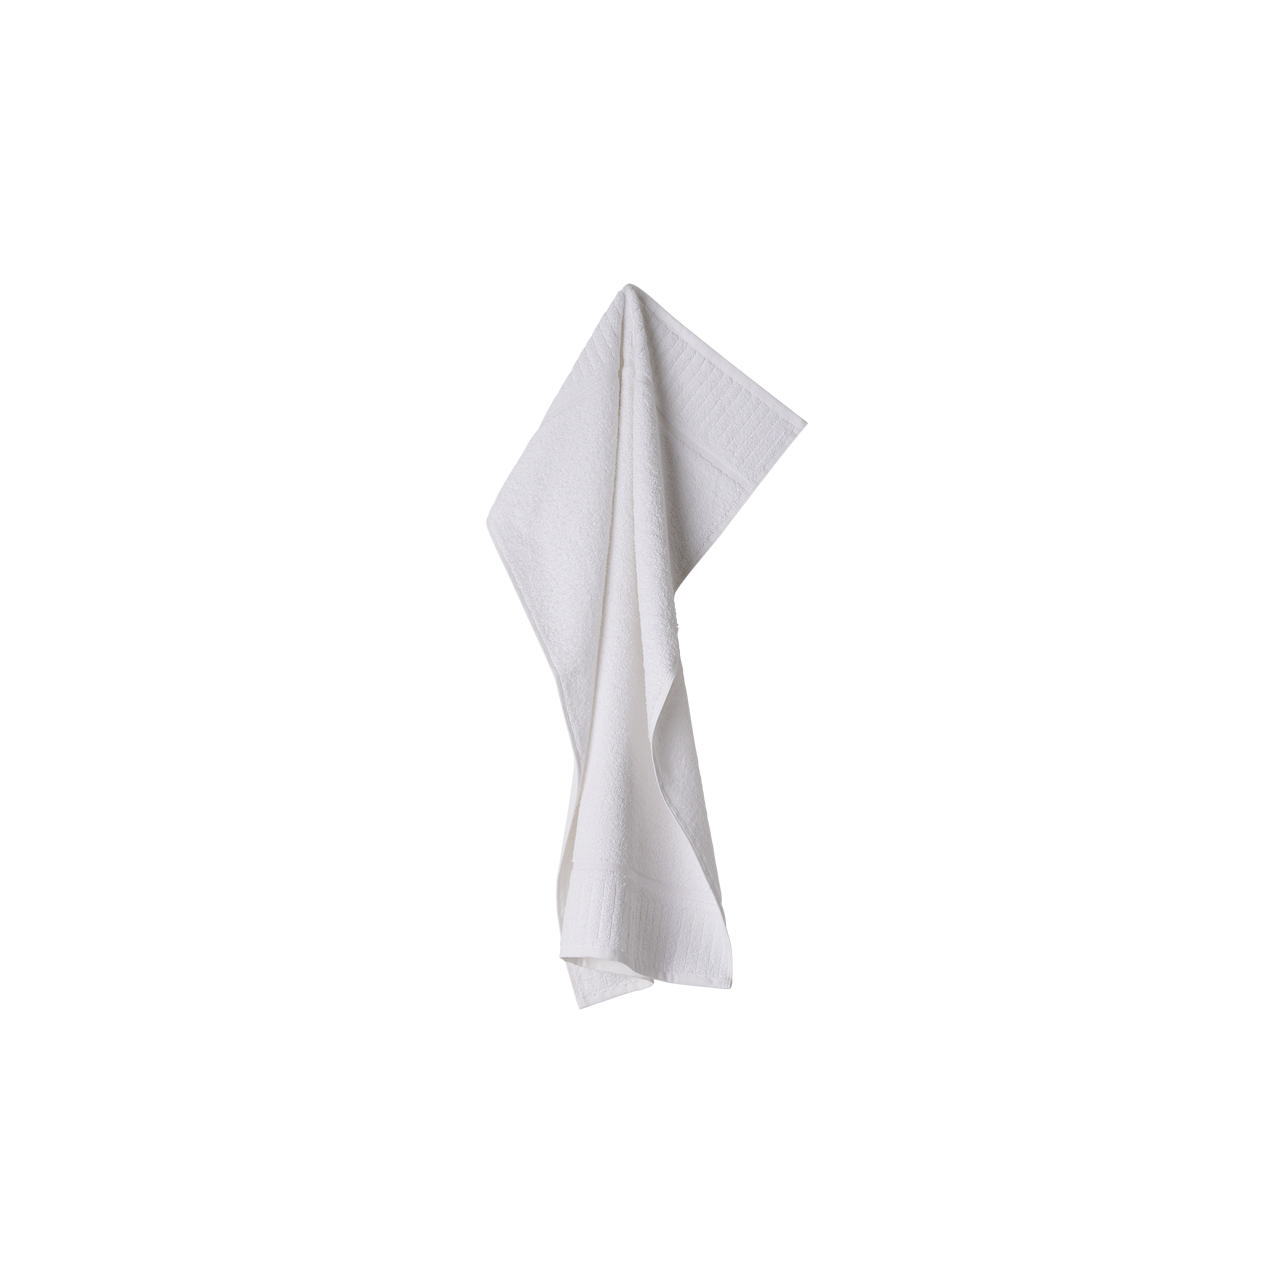 Frederik håndklæde 50x78 cm